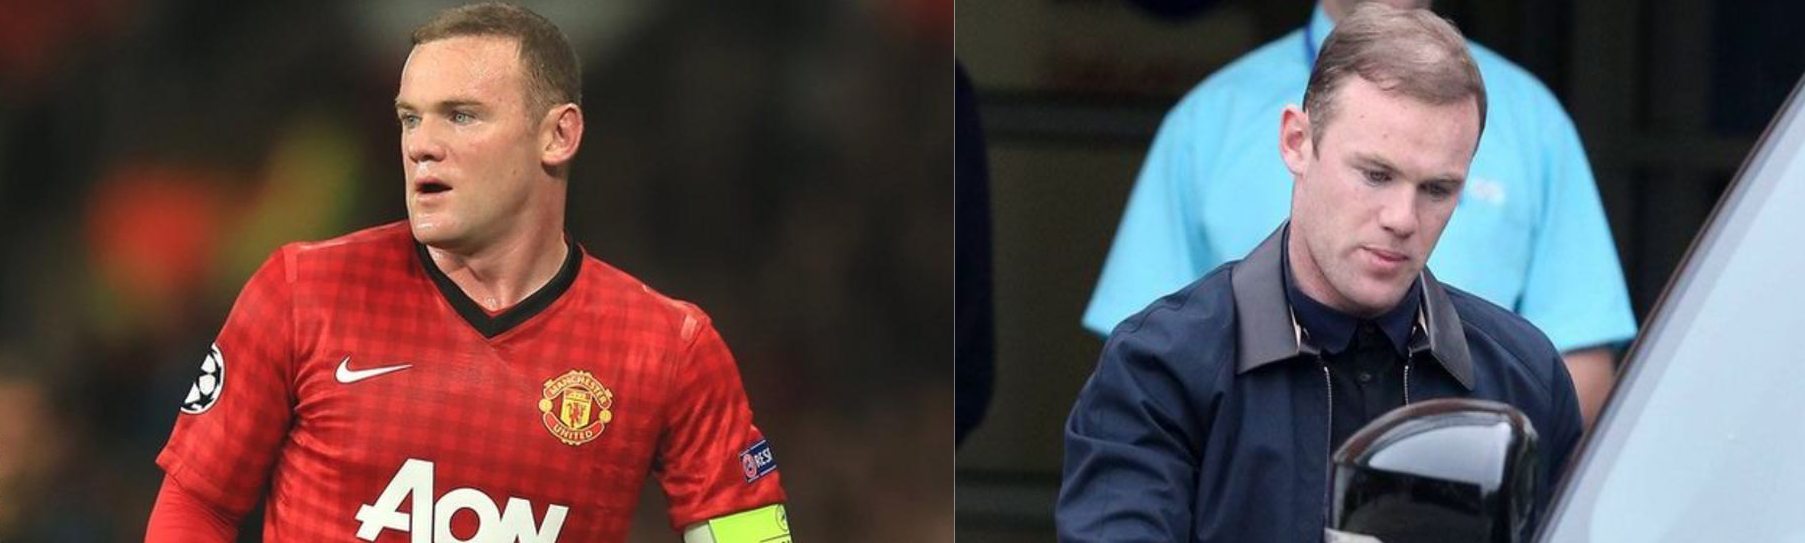 Wayne Rooney’s hair in 2012 vs 2013